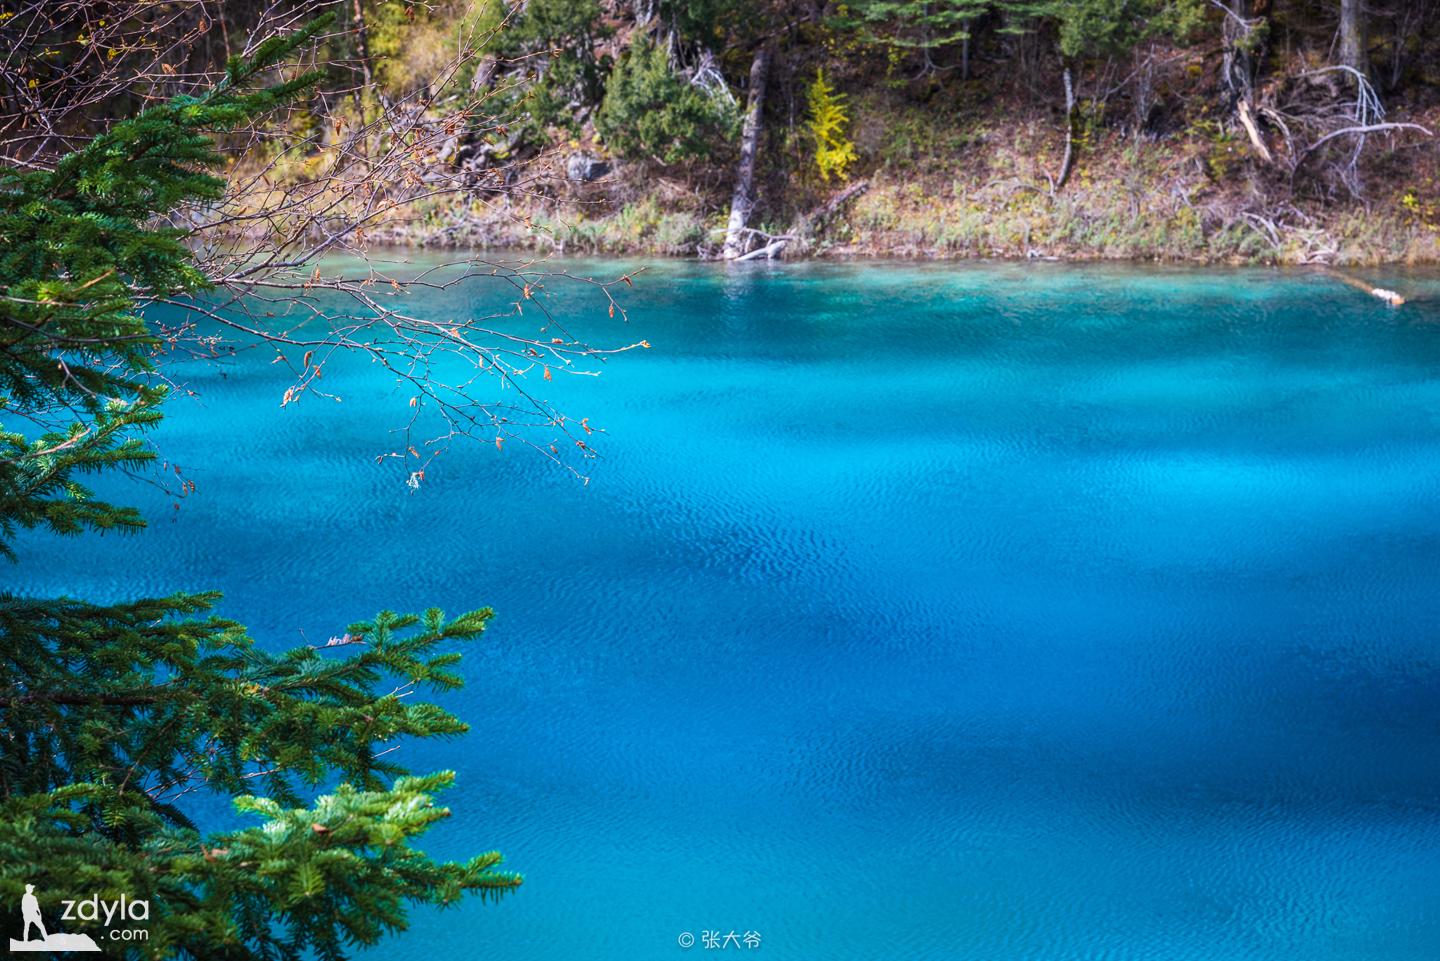 Jiuzhai Valley · Colorful pool